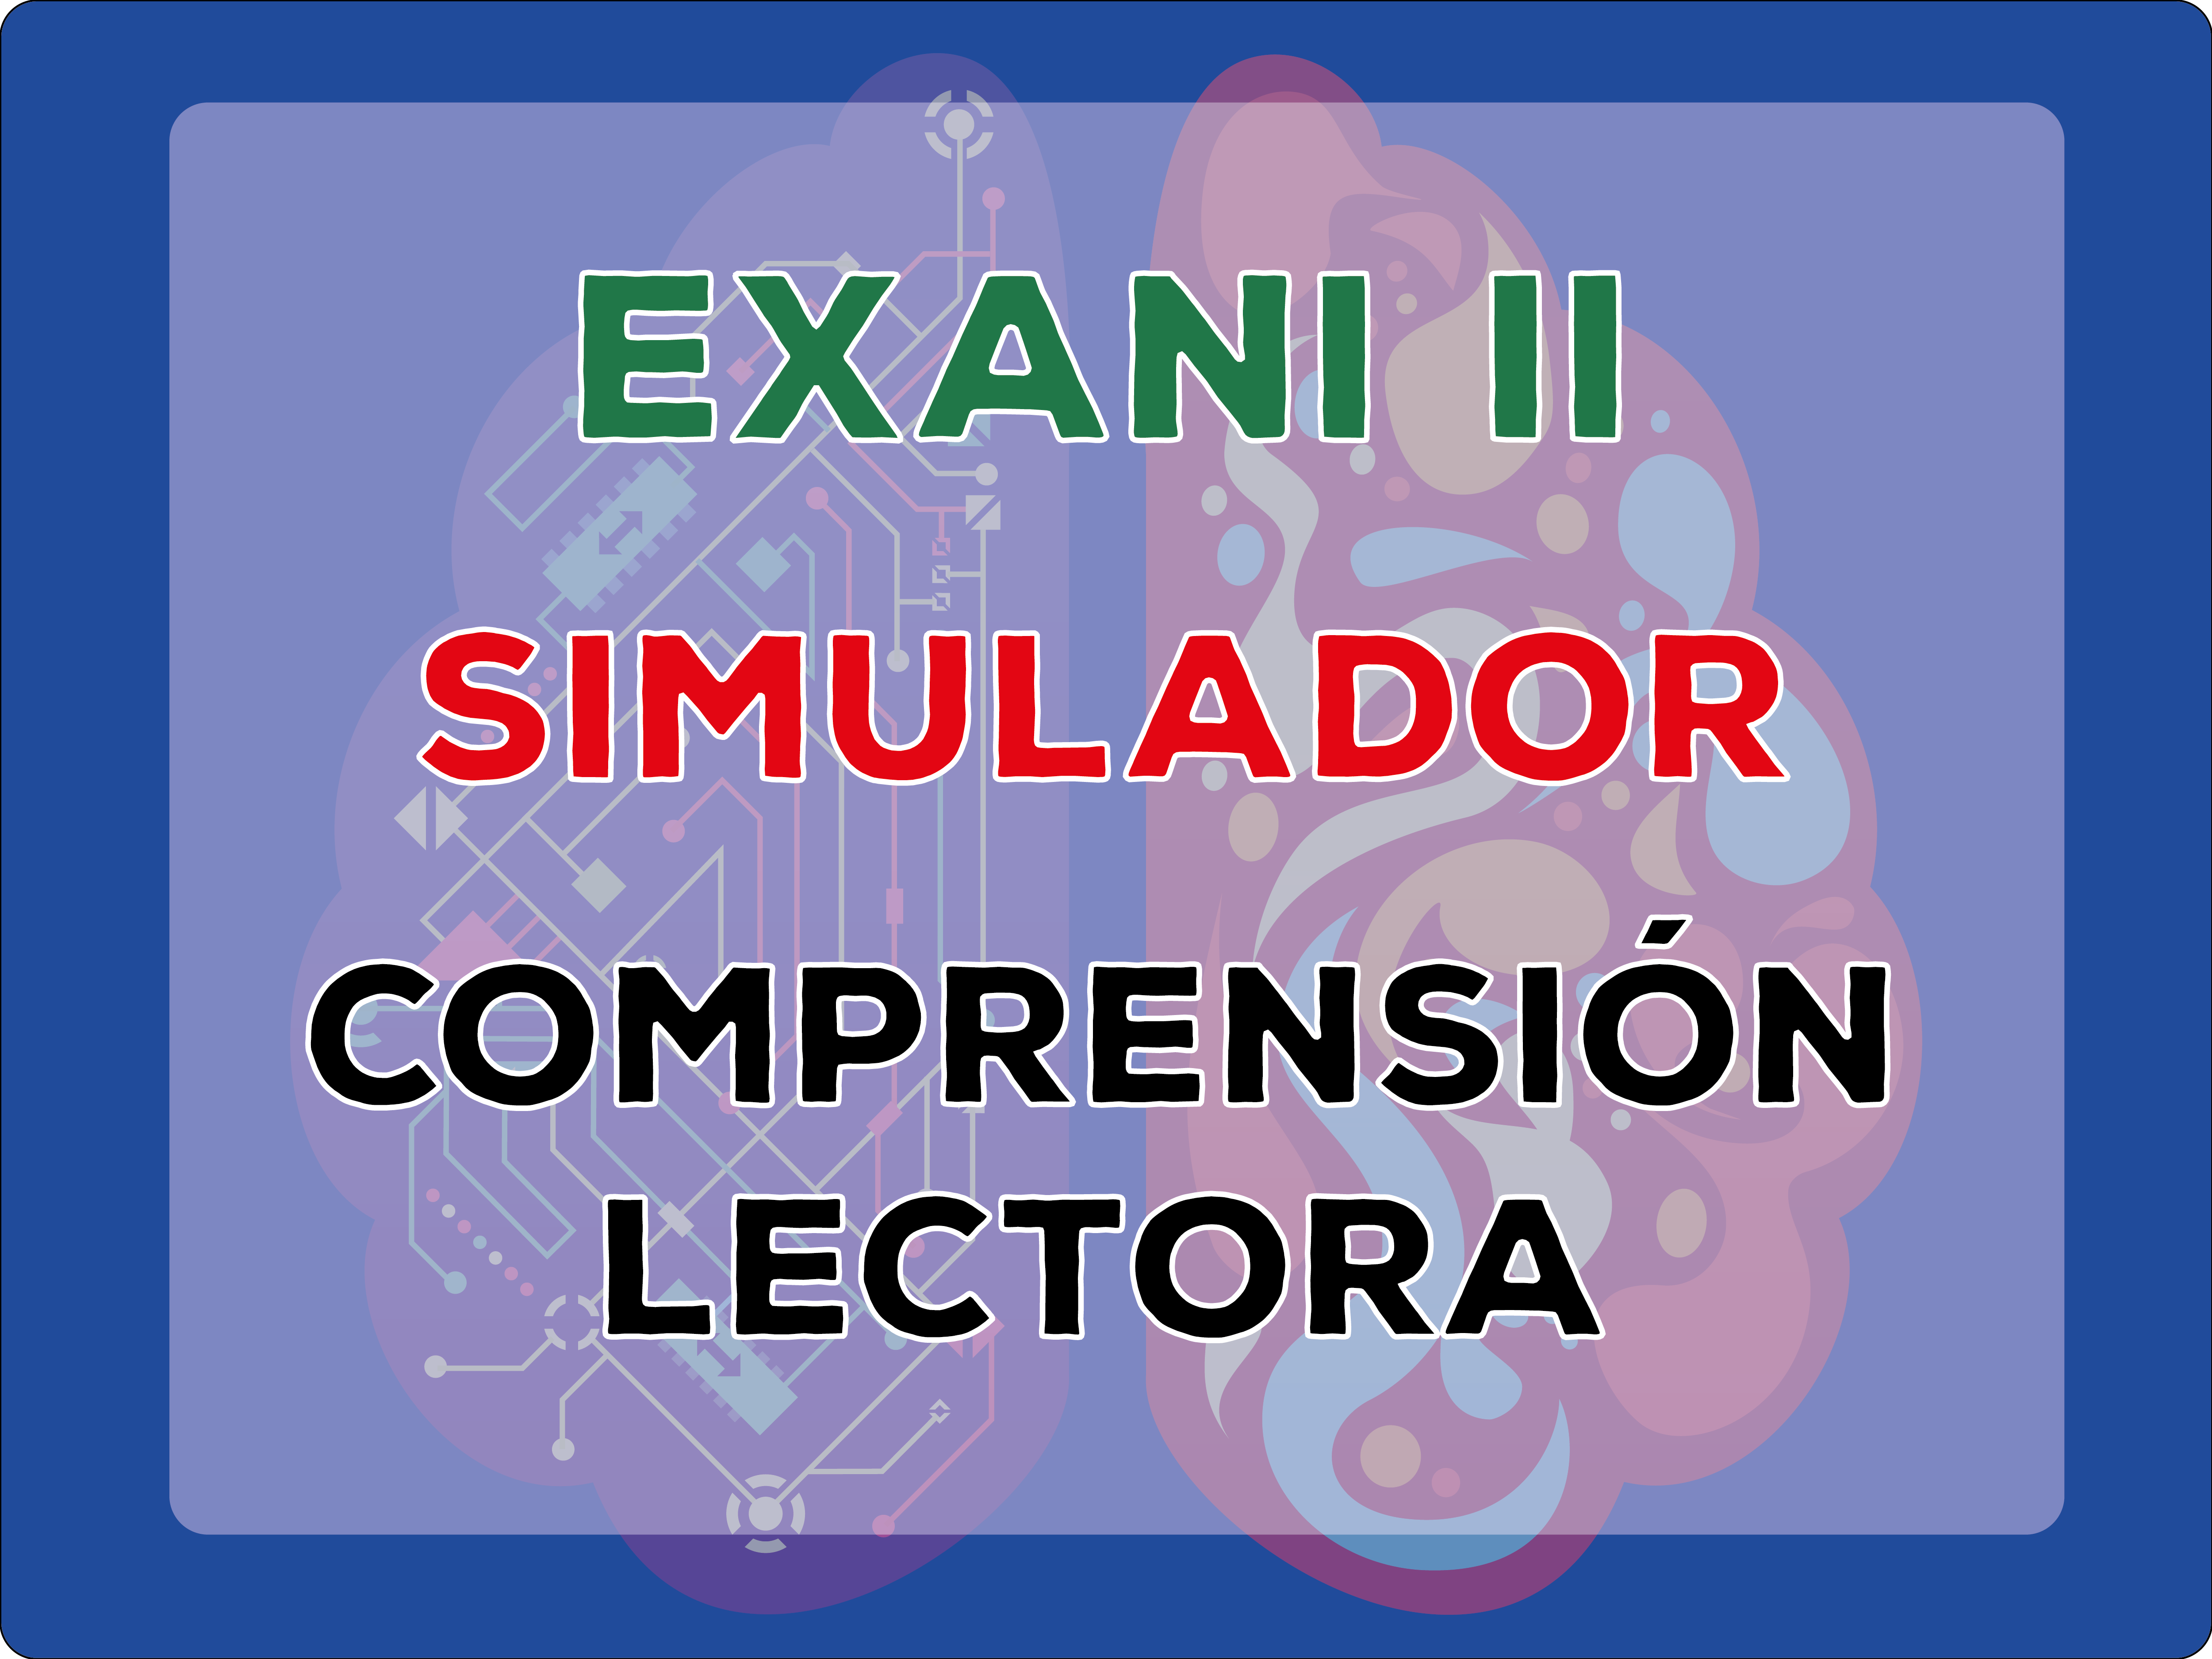 Simulador Comprensión Lectora Exani II